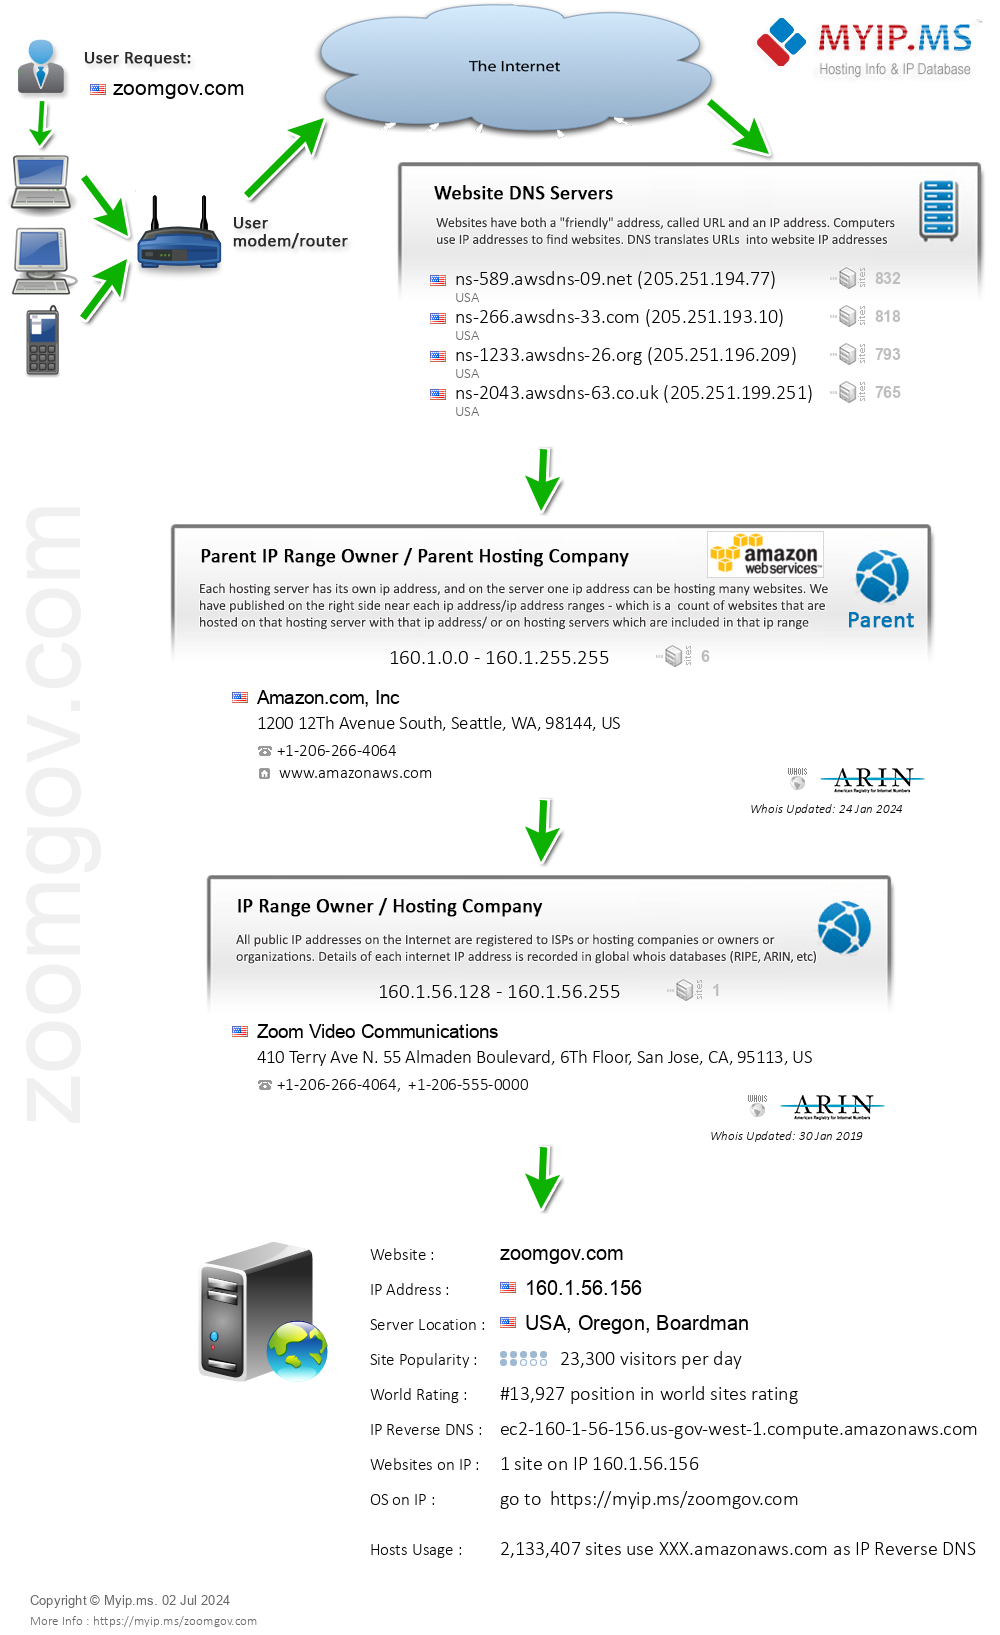 Zoomgov.com - Website Hosting Visual IP Diagram